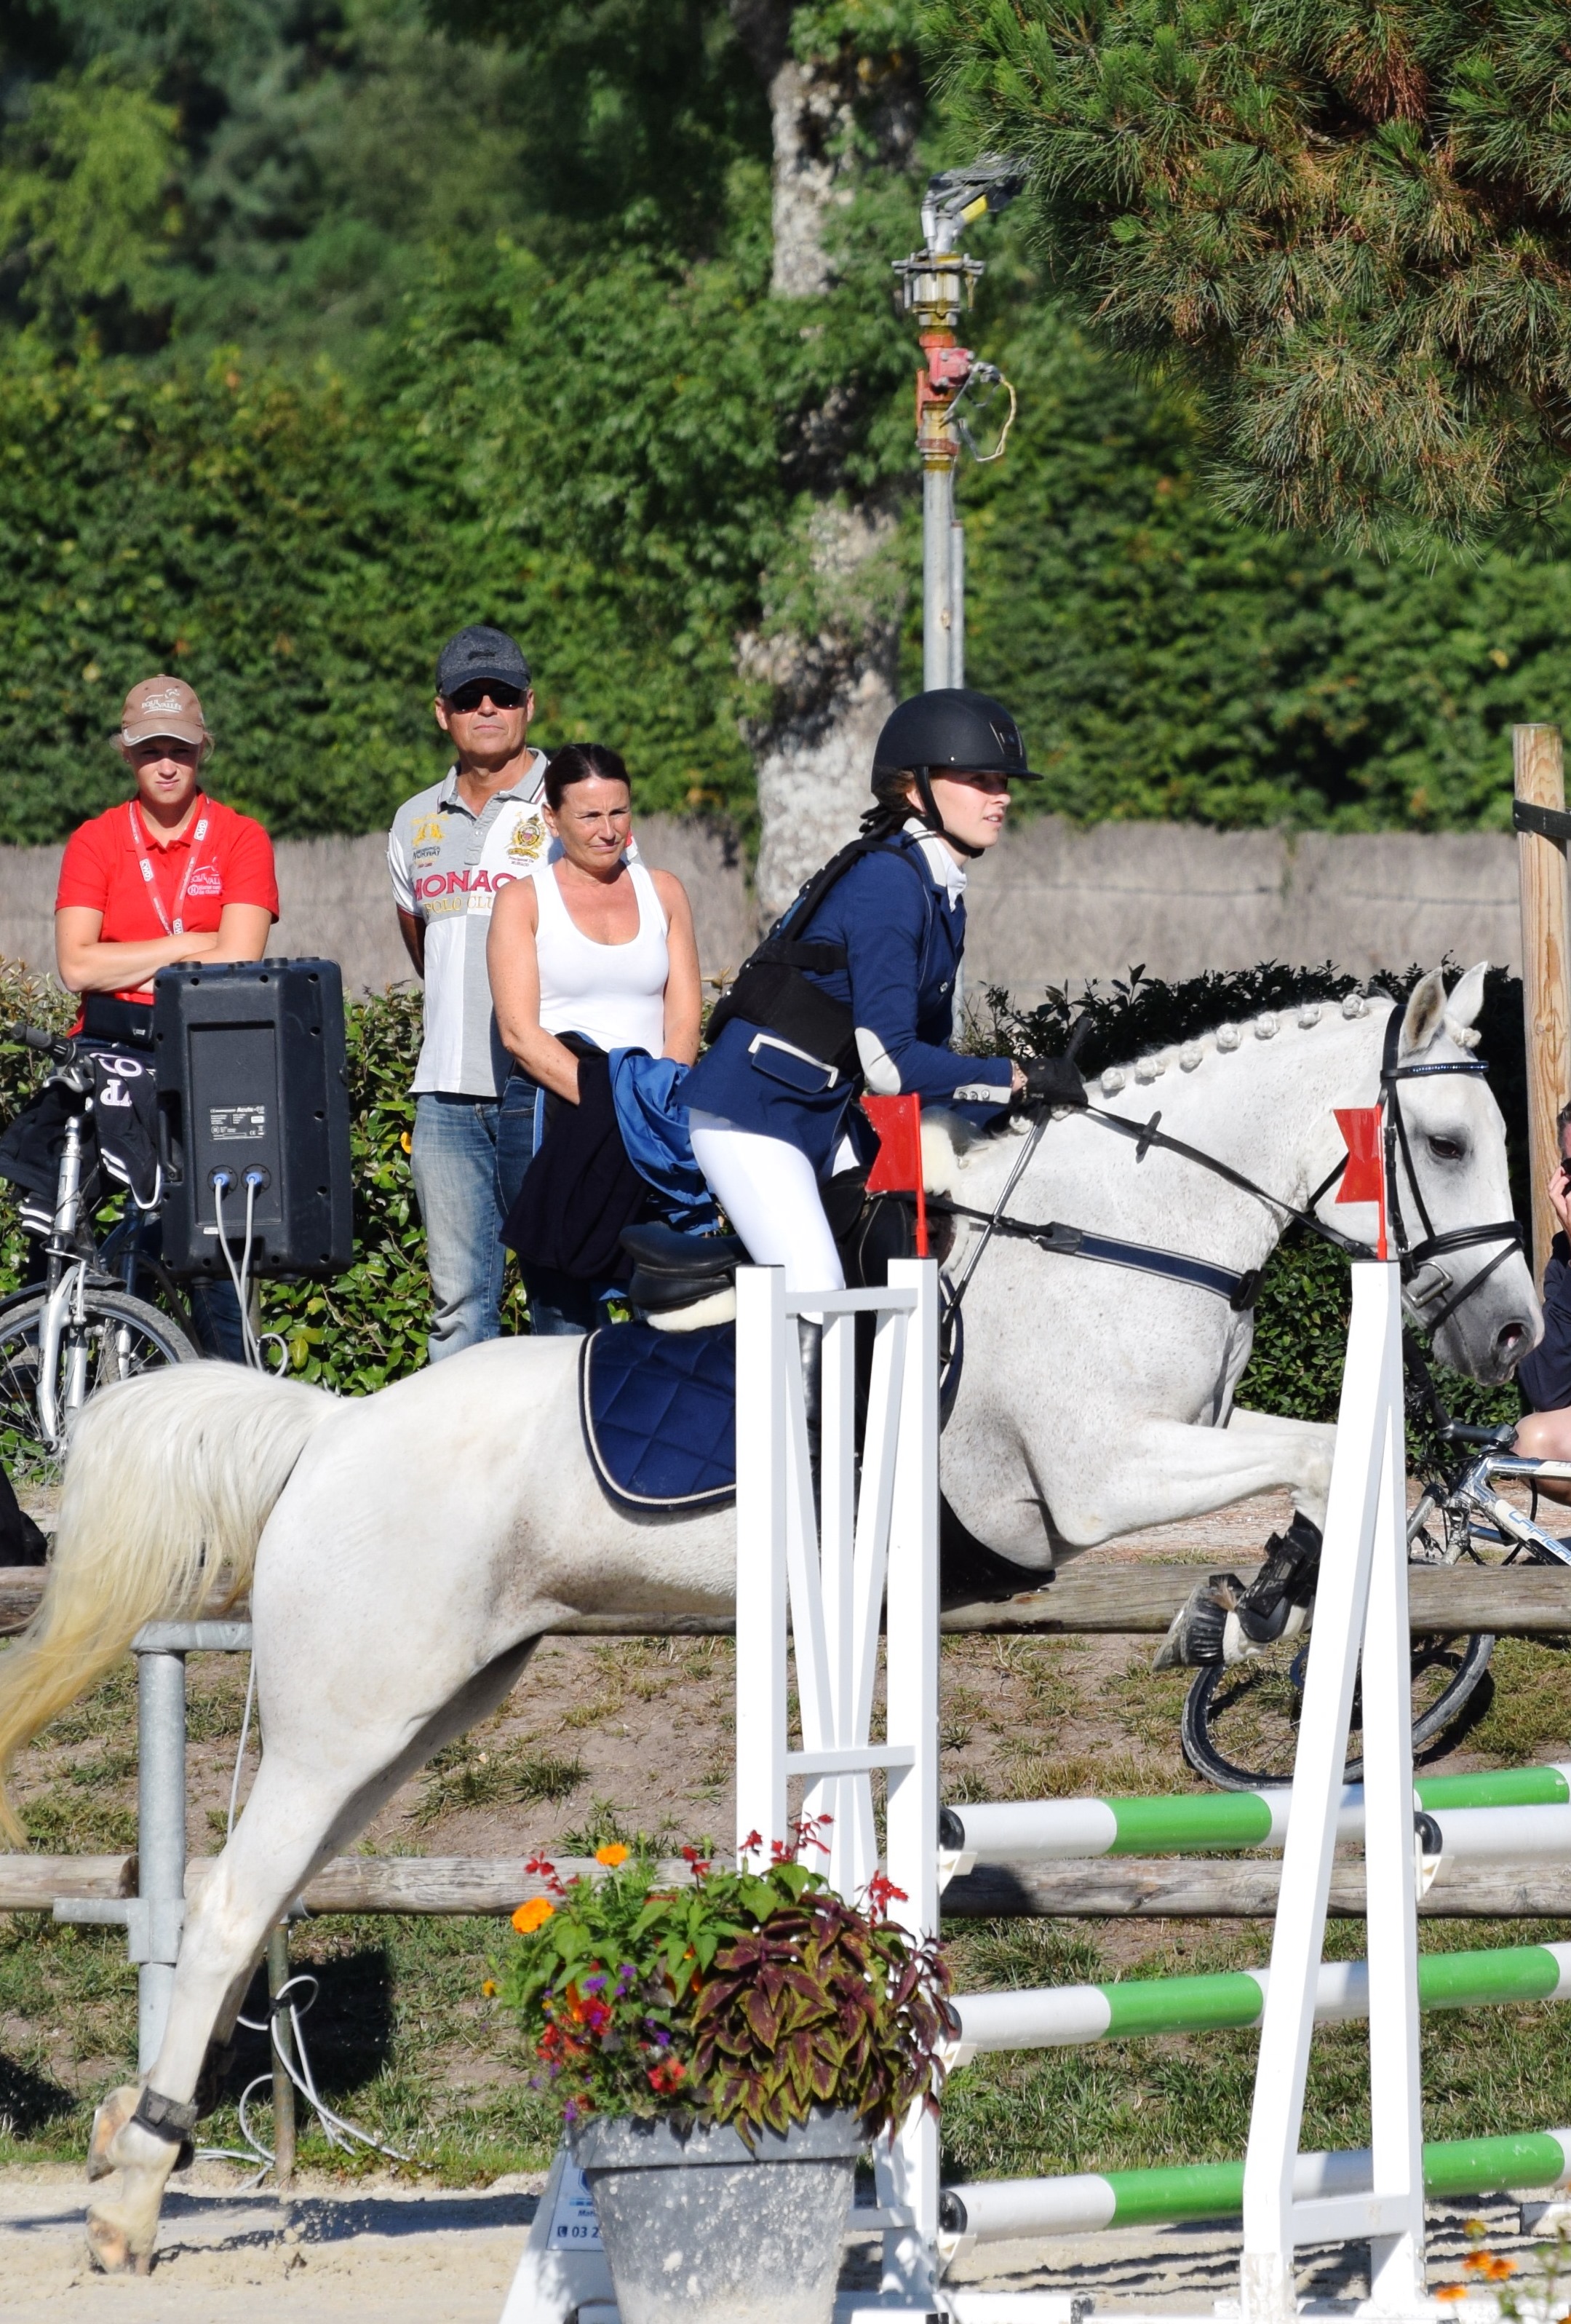 Louise C. & Perle des Gazagnes Championnats de France poney CSO 2017 Lamotte Beuvron